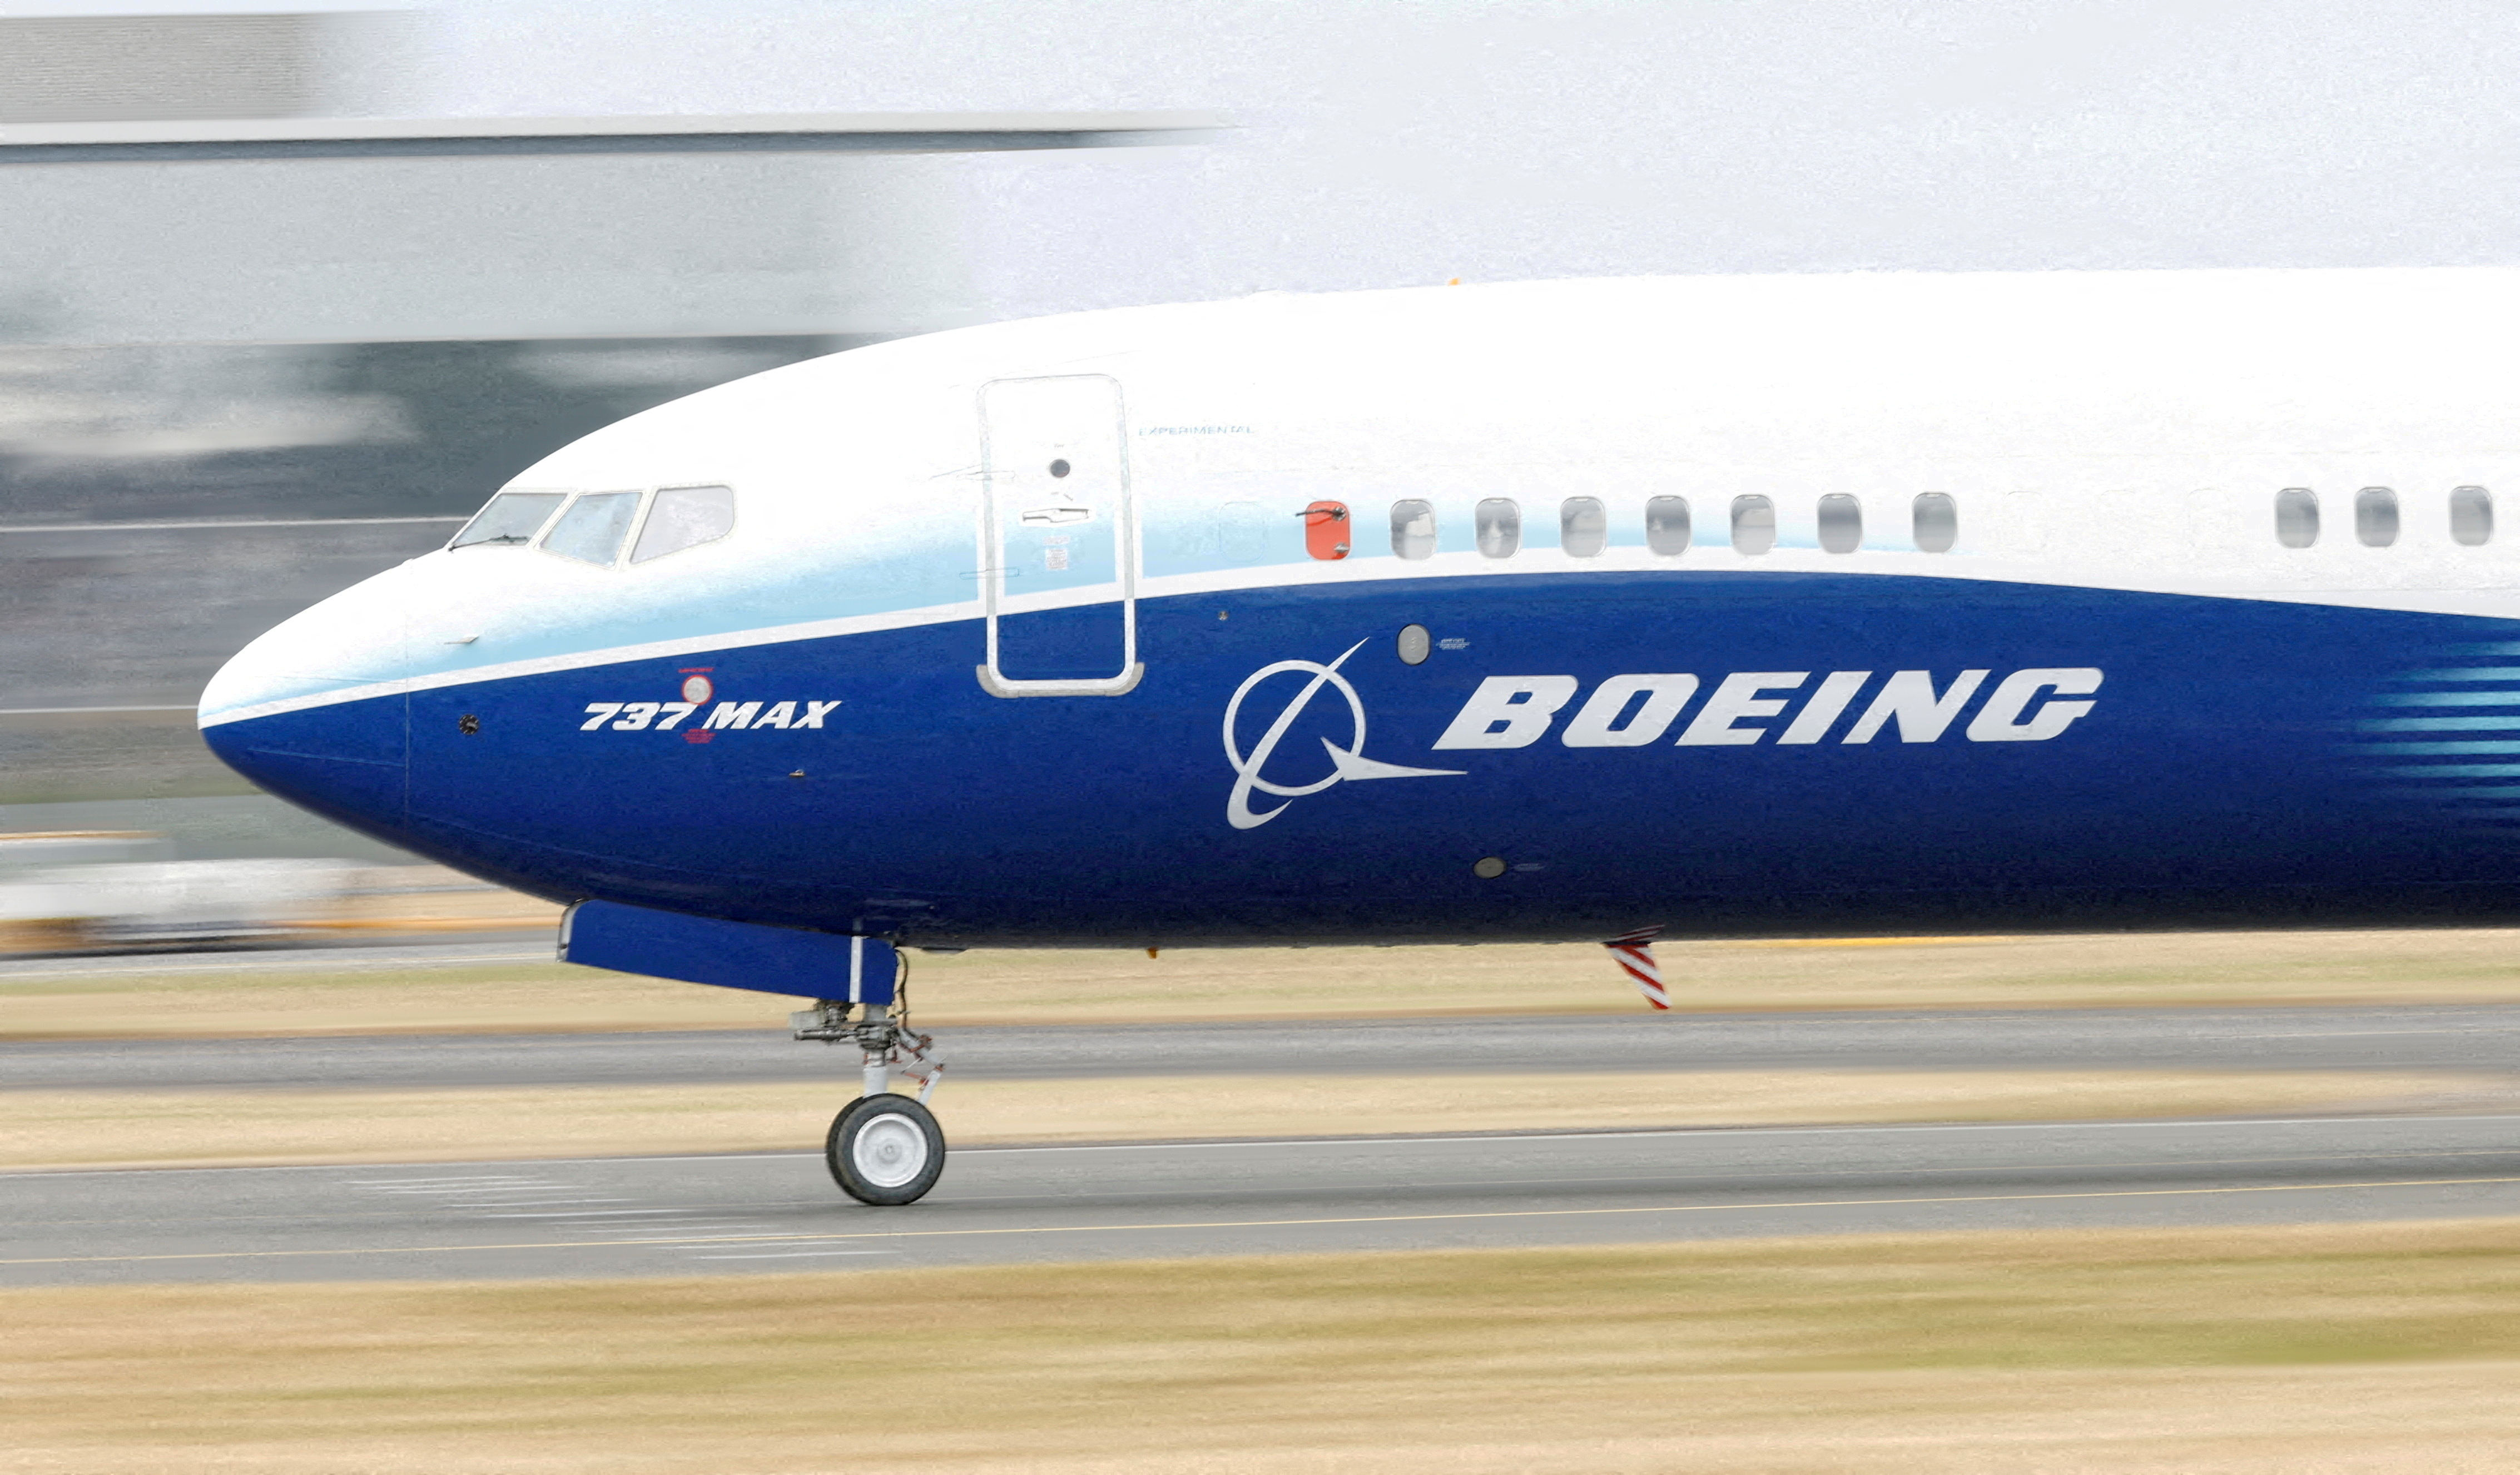 Le chiffre d'affaires de Boeing atteint 17,9 milliards de dollars et la perte nette se réduit à 425 millions de dollars